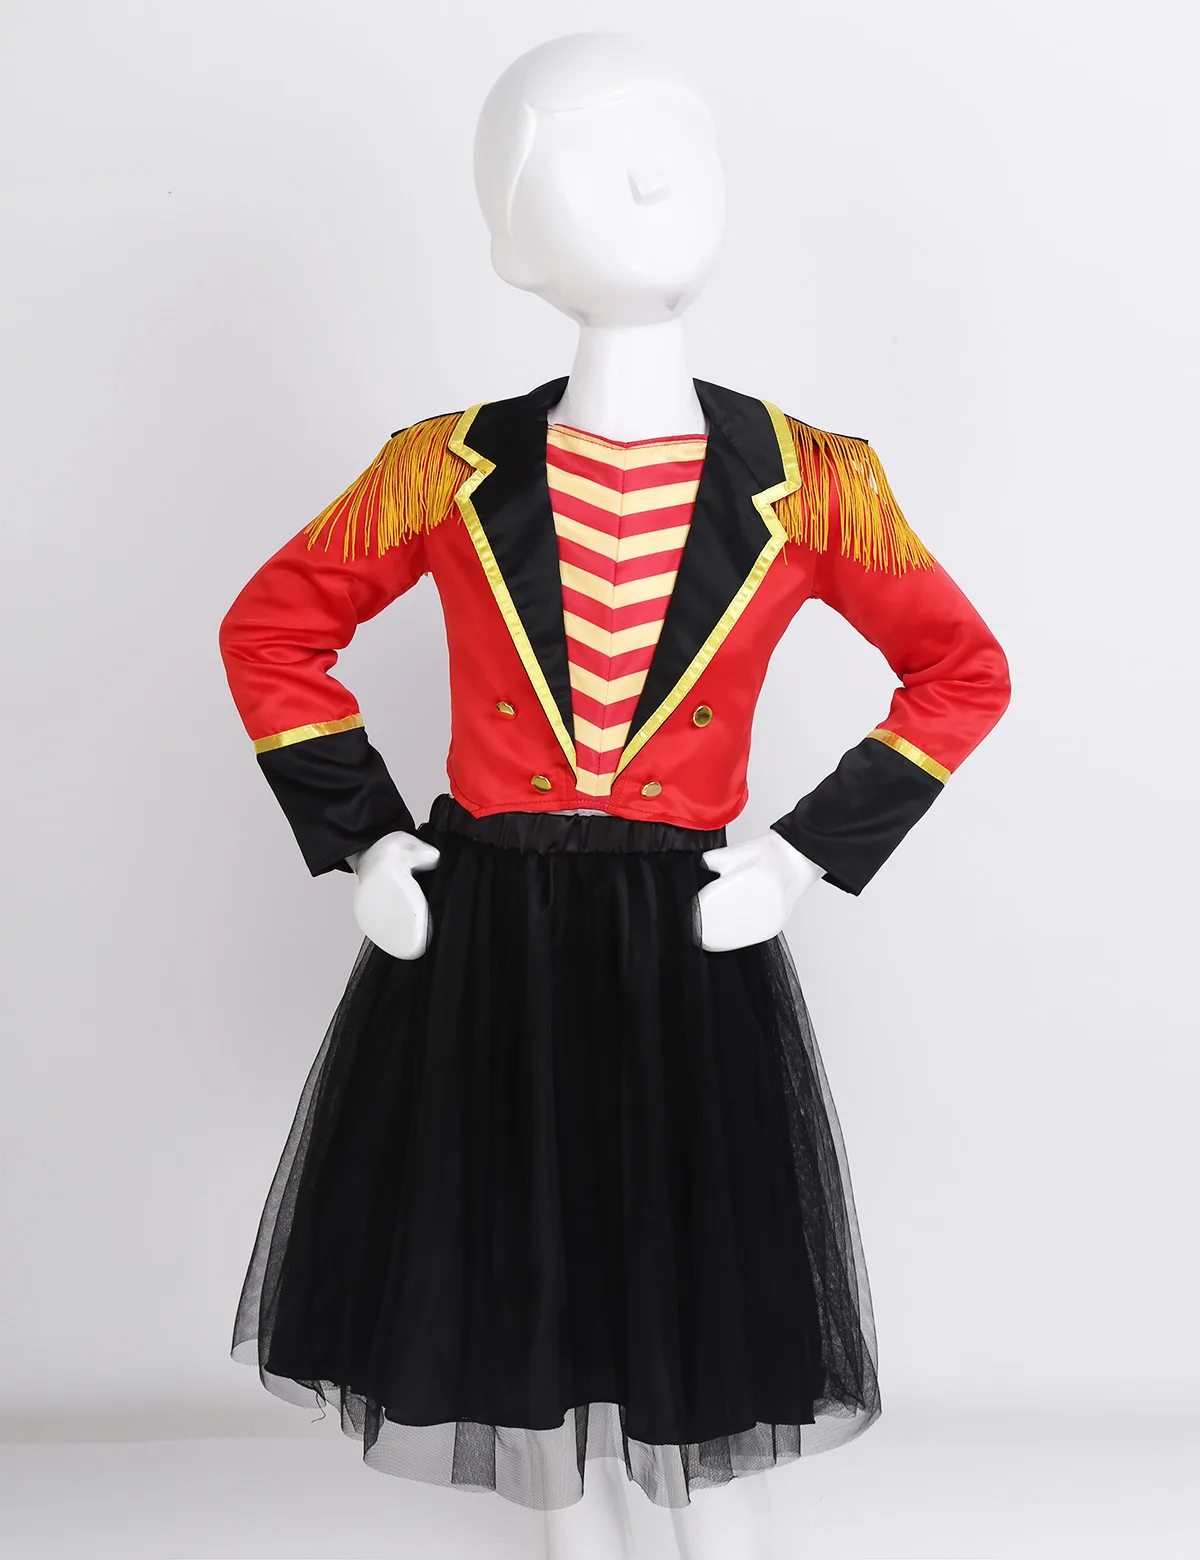 Детский костюм для девочек с изображением цирка, рингмейстера, костюм с длинными рукавами, с кисточками, куртка с эполетом и сетчатая юбка-пачка, комплект для Хэллоуина, карнавала